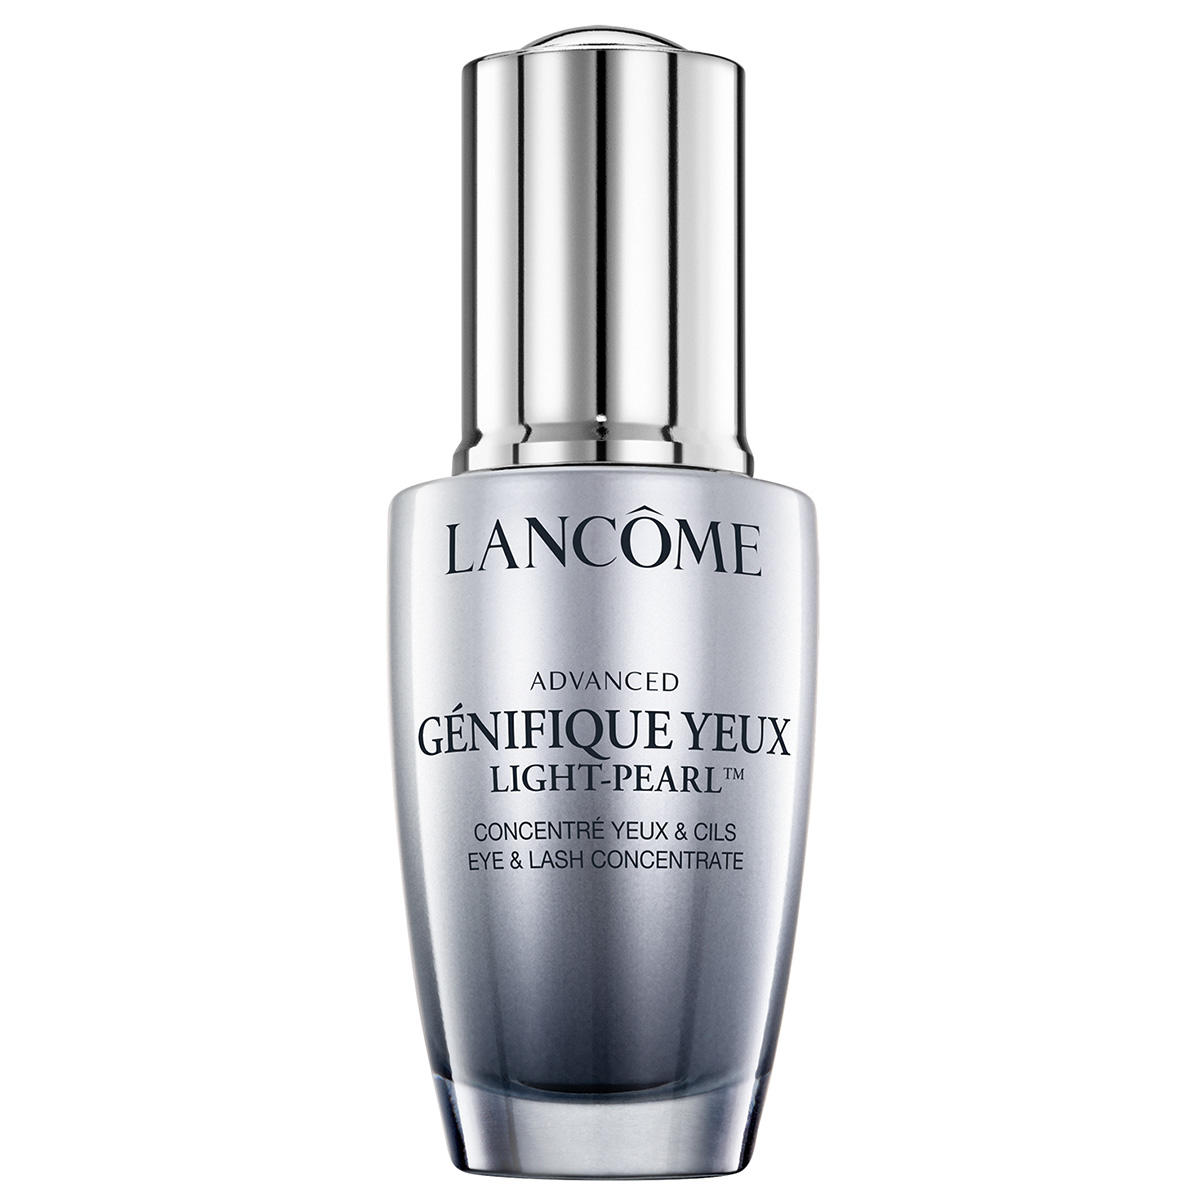 Lancôme Advanced Génifique Yeux Light Pearl 20 ml | baslerbeauty